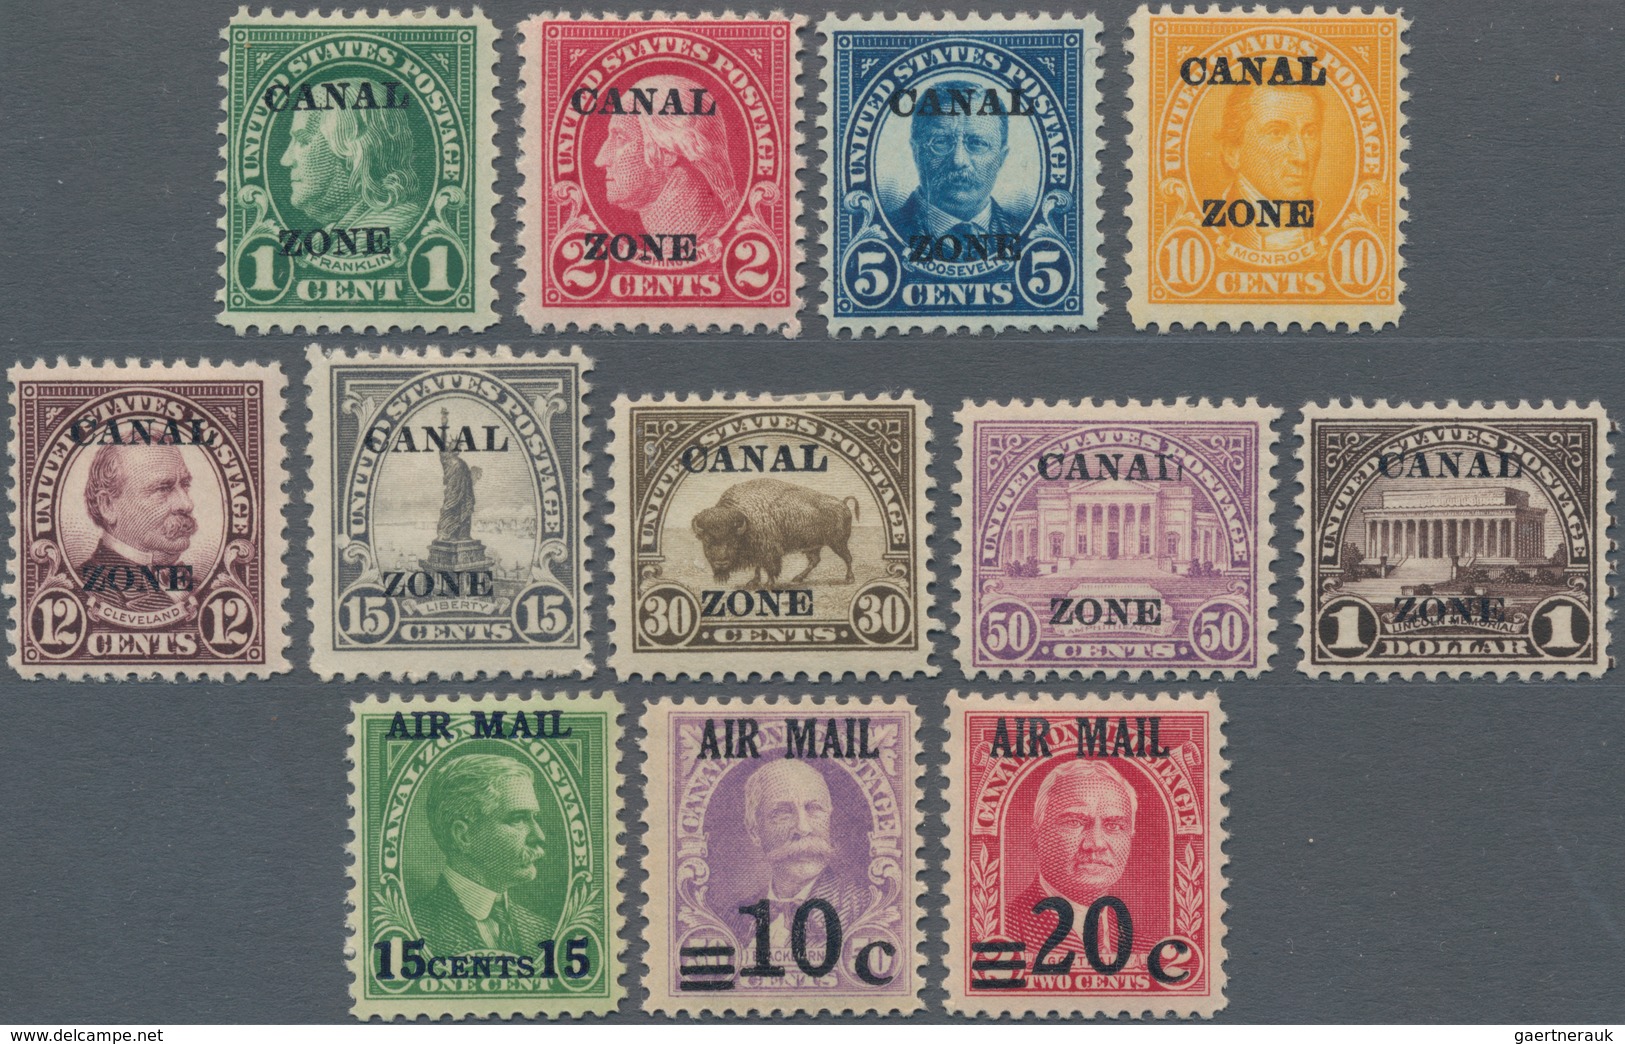 Panama-Kanalzone: 1924-26 Short Set Of Nine Definitives Optd. "CANAL/ZONE" Including 1c., 2c., 5c., - Panama